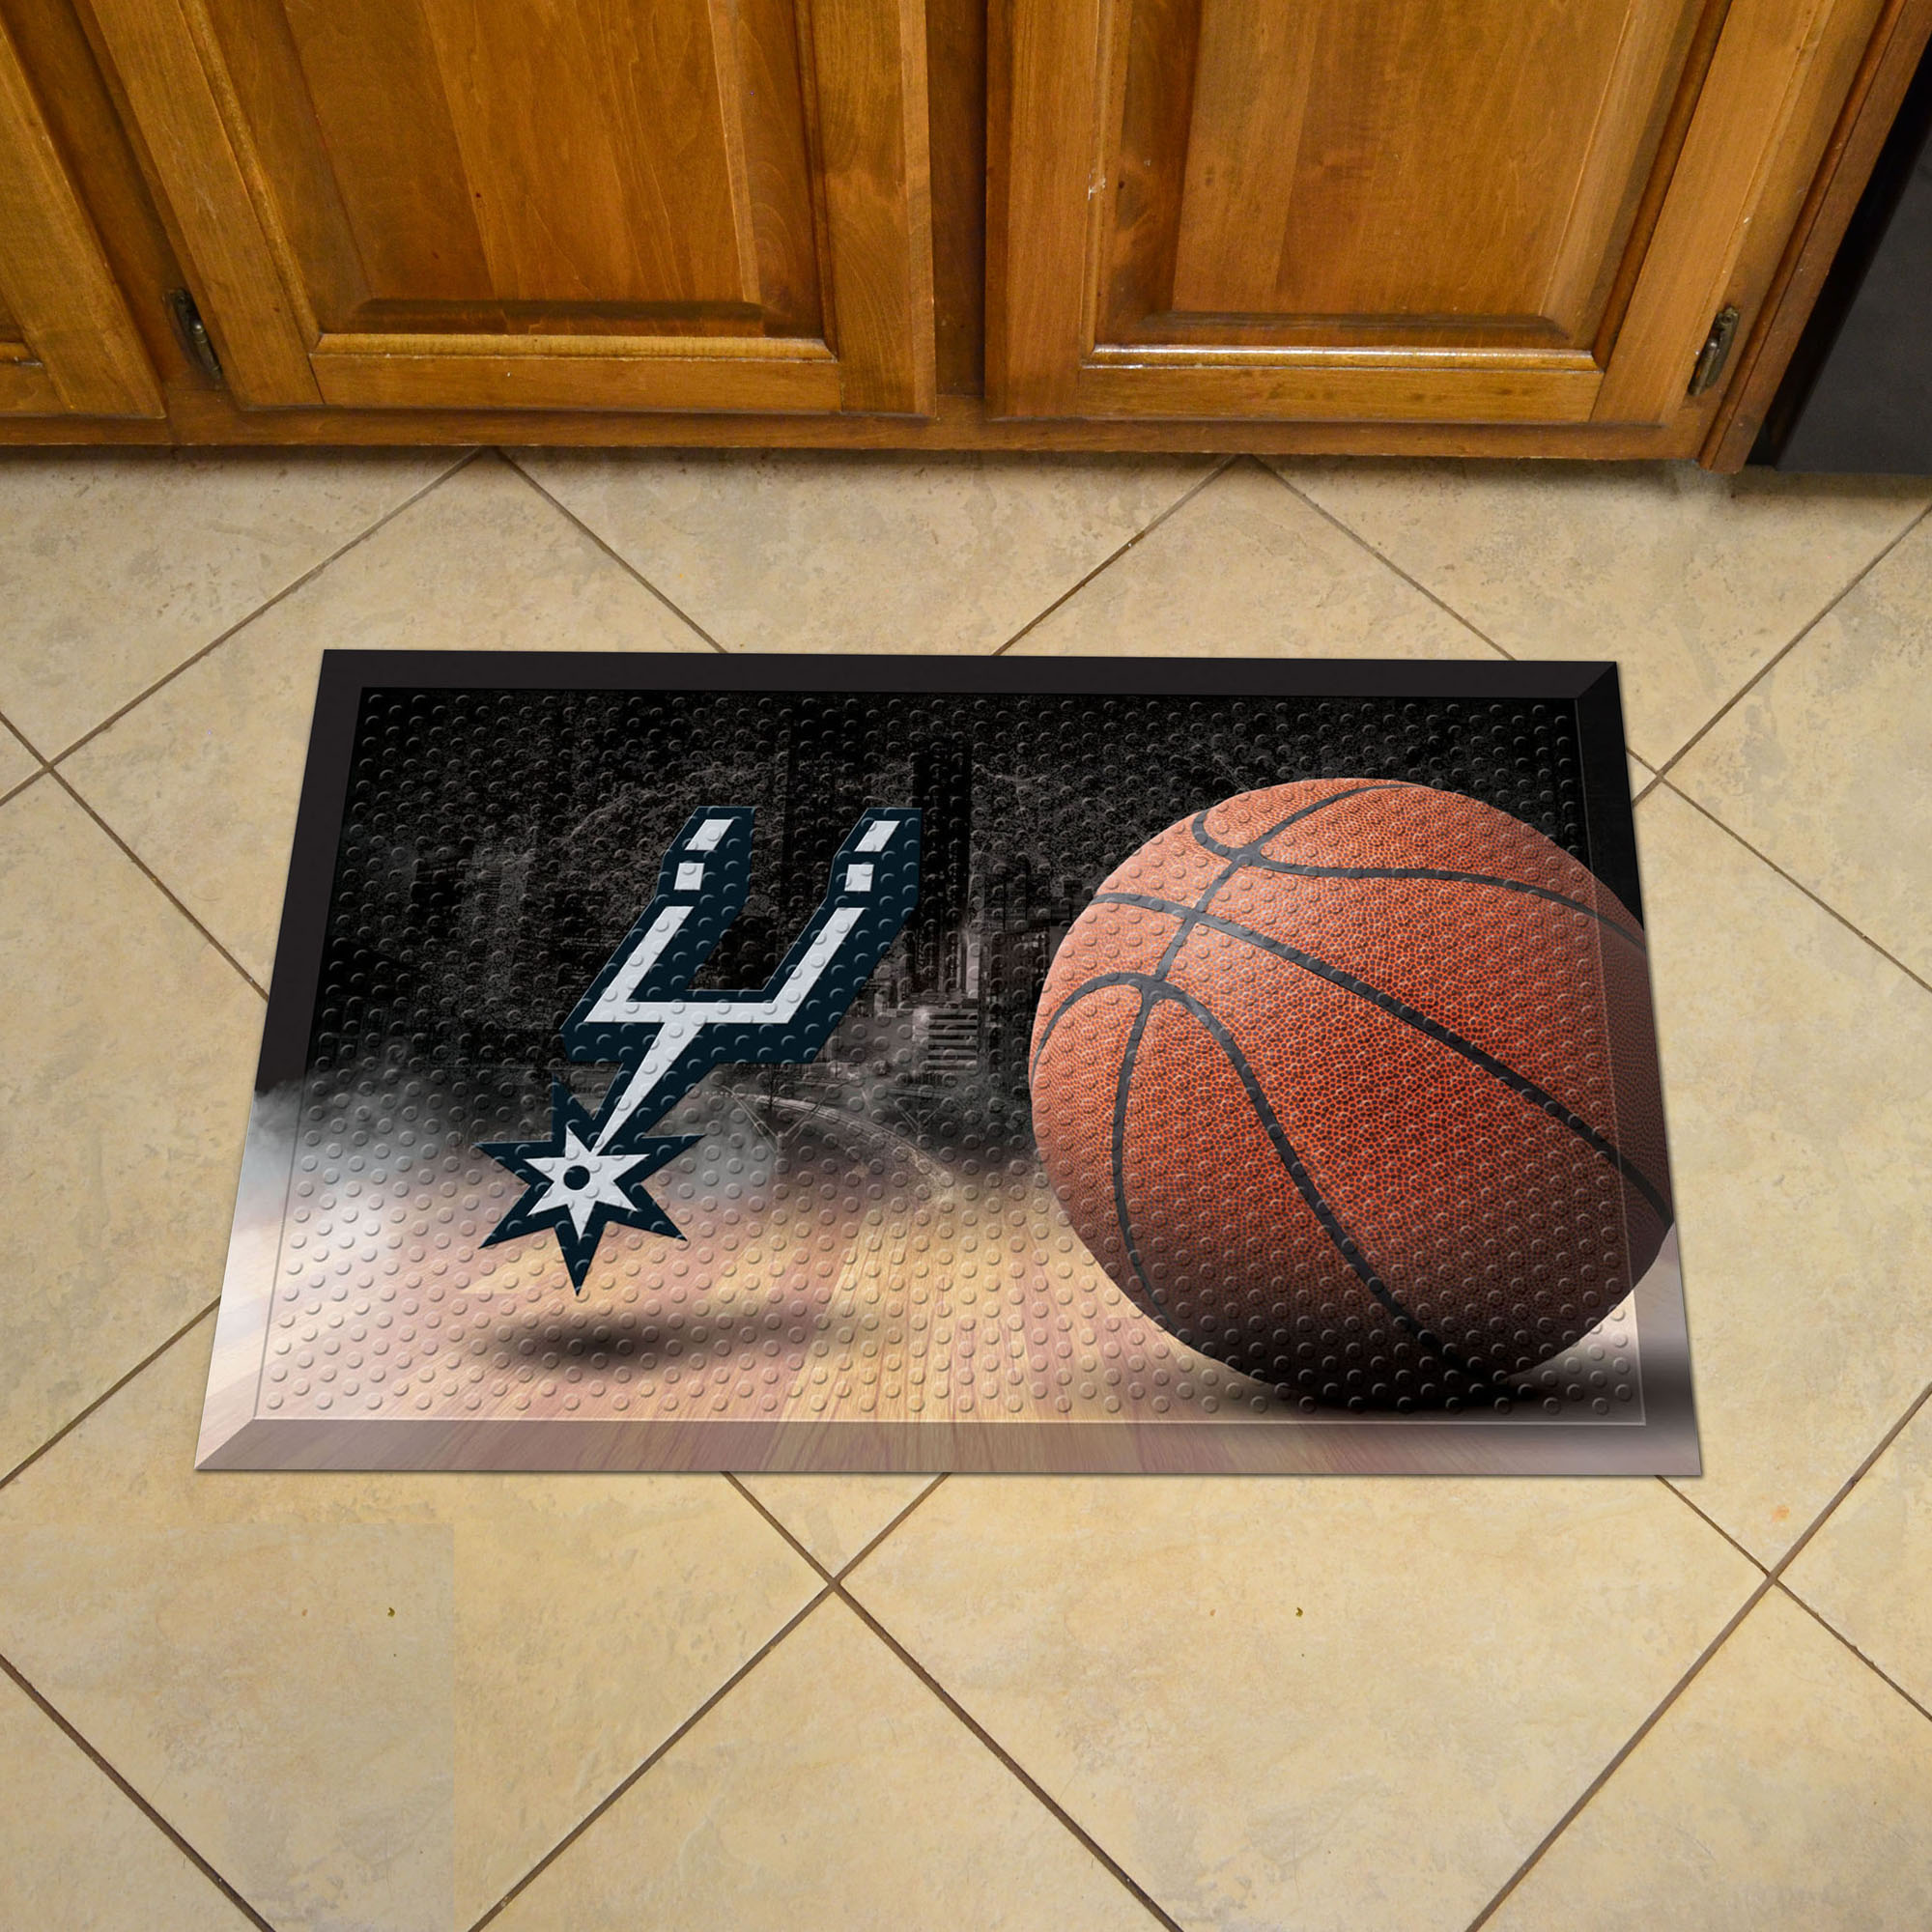 San Antonio Spurs Scrapper Doormat - 19 x 30 rubber